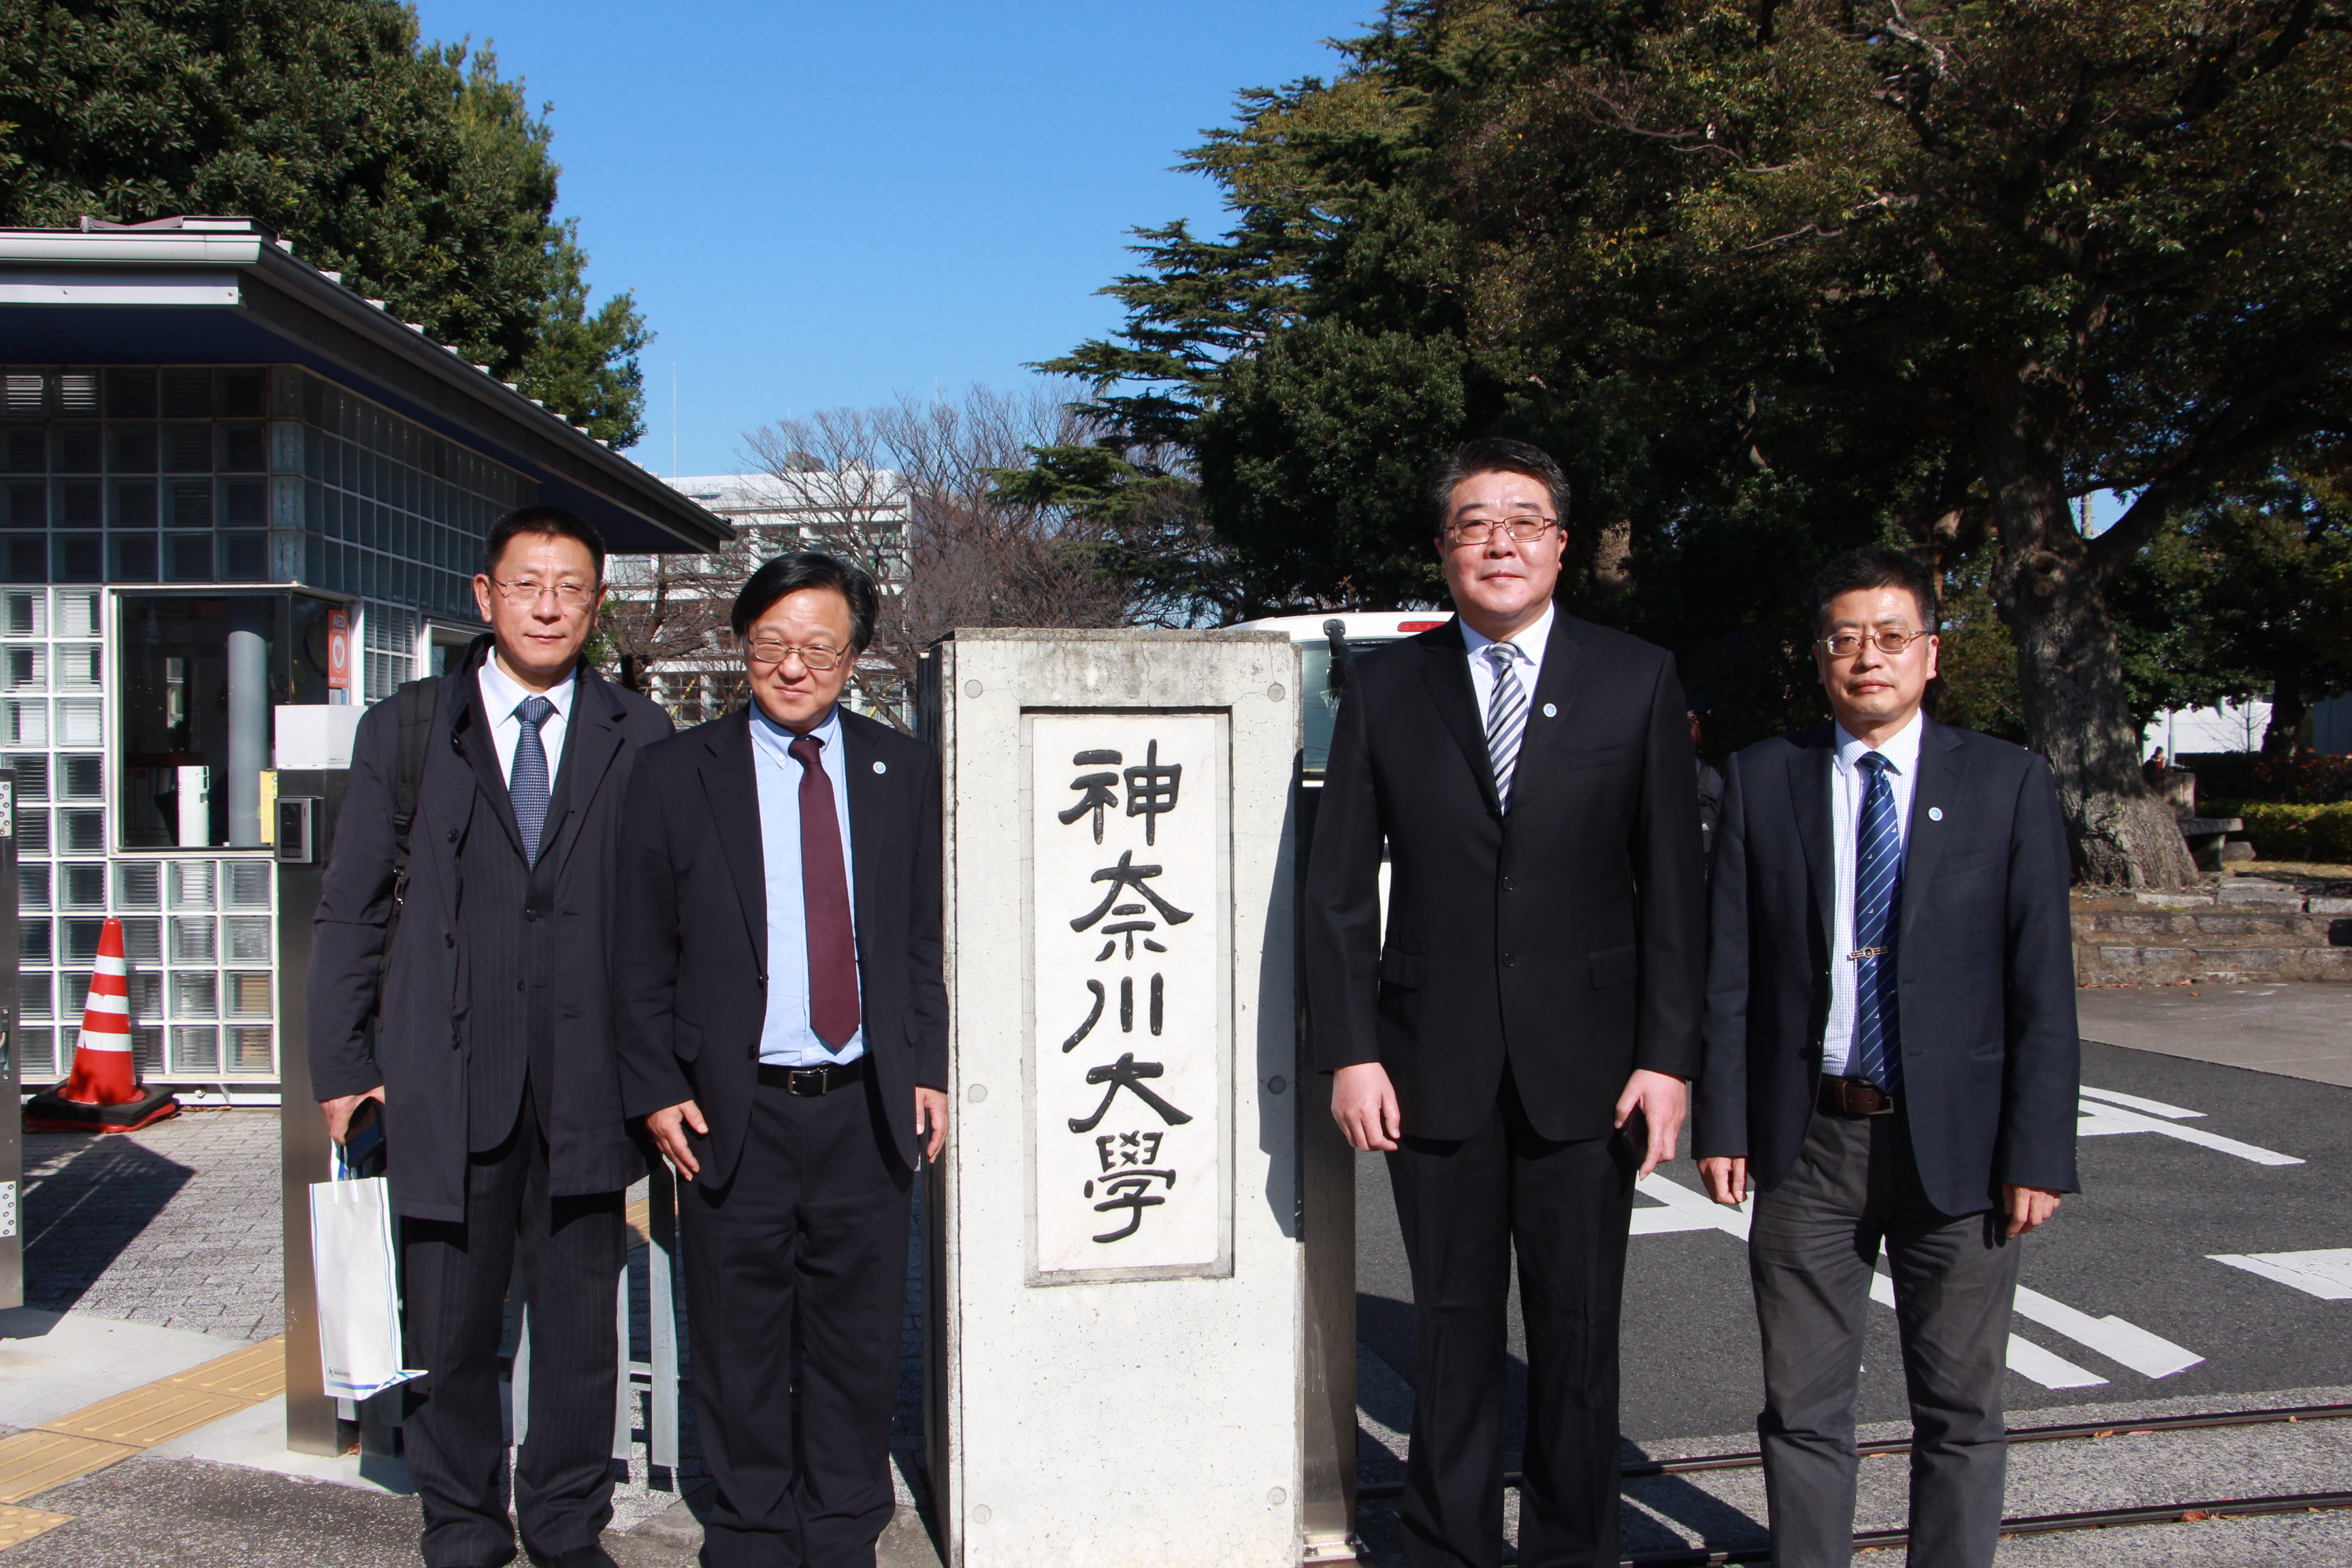 访问日本期间,王亚军一行先后访问了神奈川大学,早稻田大学,北九州市